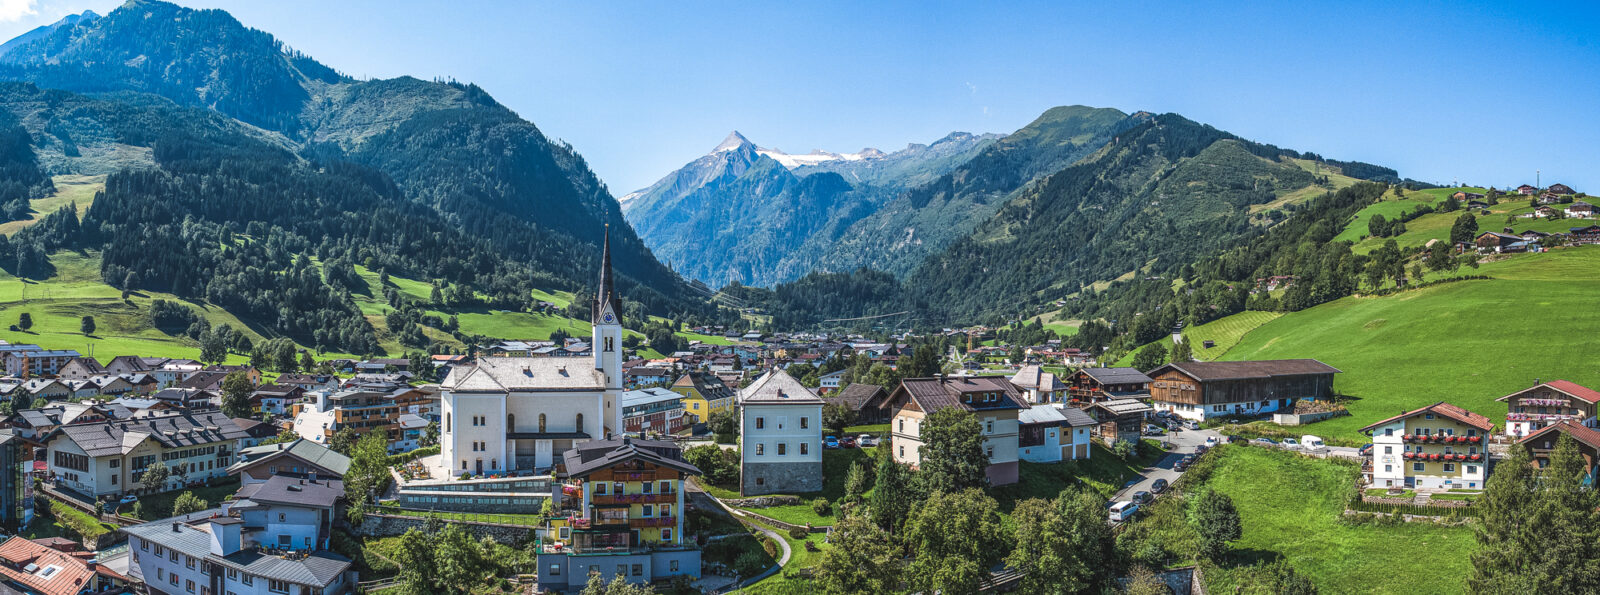 Das kleine Dorf Kaprun, im Hintergrund das Kitzsteinhorn Gletscher Skigebiet